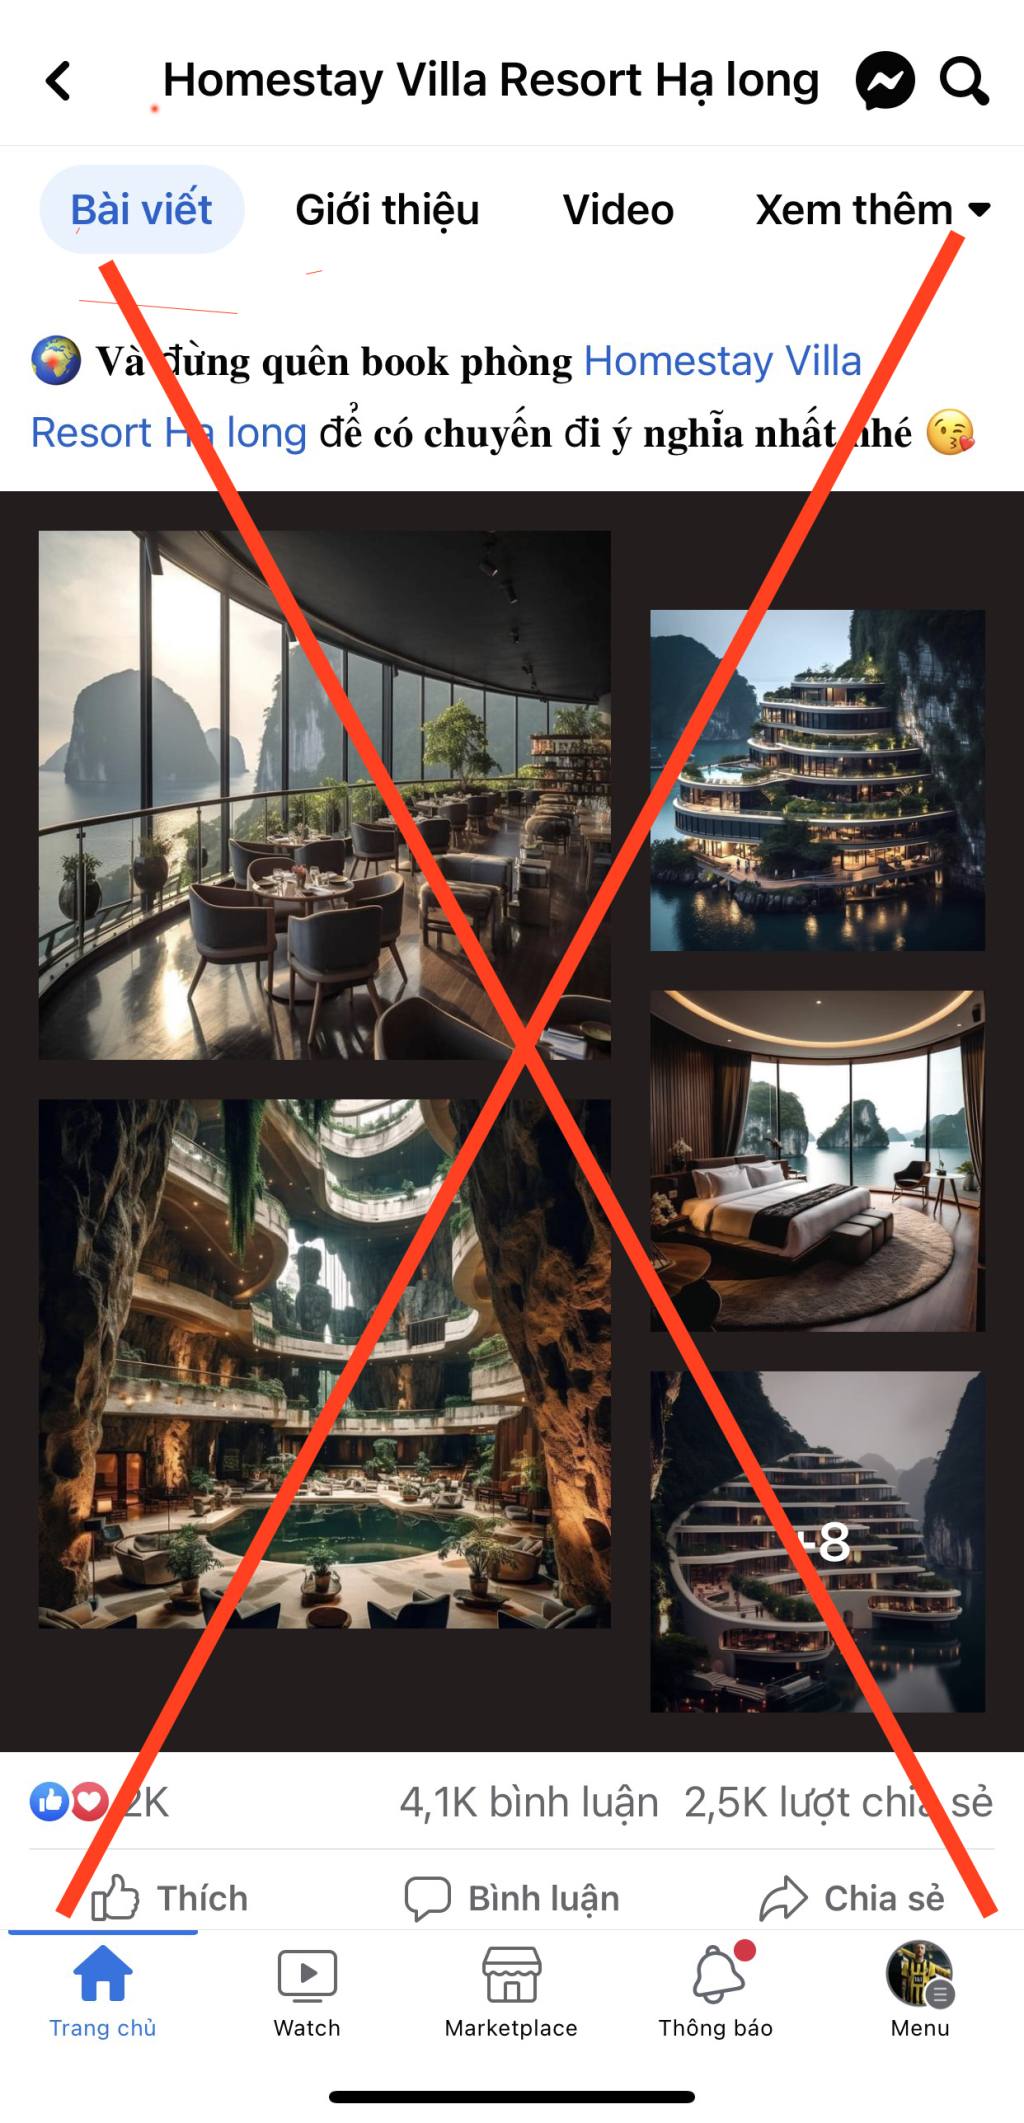 Xử lý thông tin sai sự thật trên mạng xã hội về hình ảnh khách sạn Fantasy Hotel Ha Long Bay trên Vịnh Hạ Long